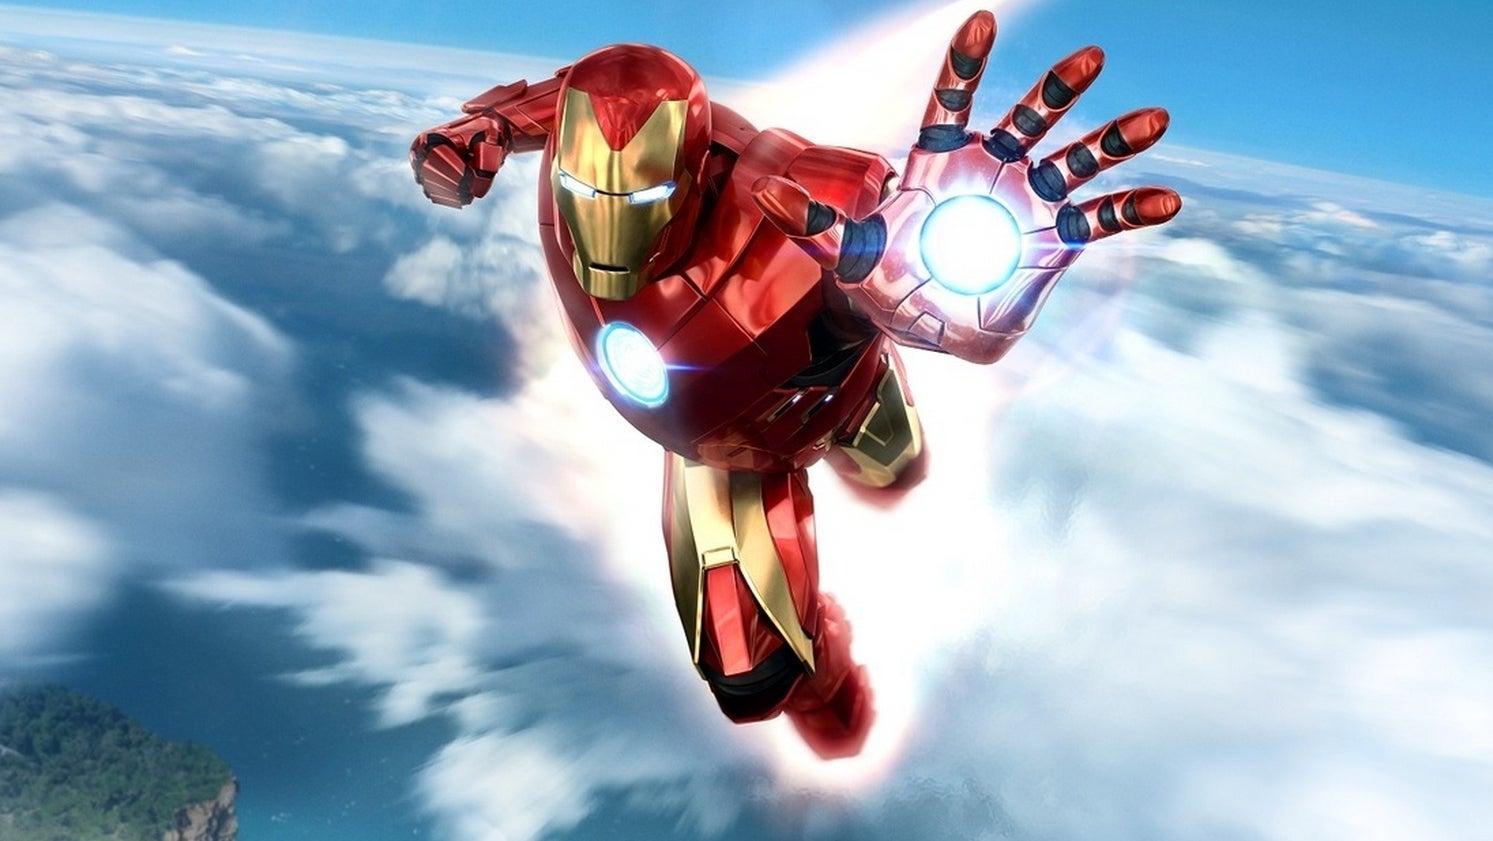 Imagen para Marvel's Iron Man durará entre 8 y 10 horas